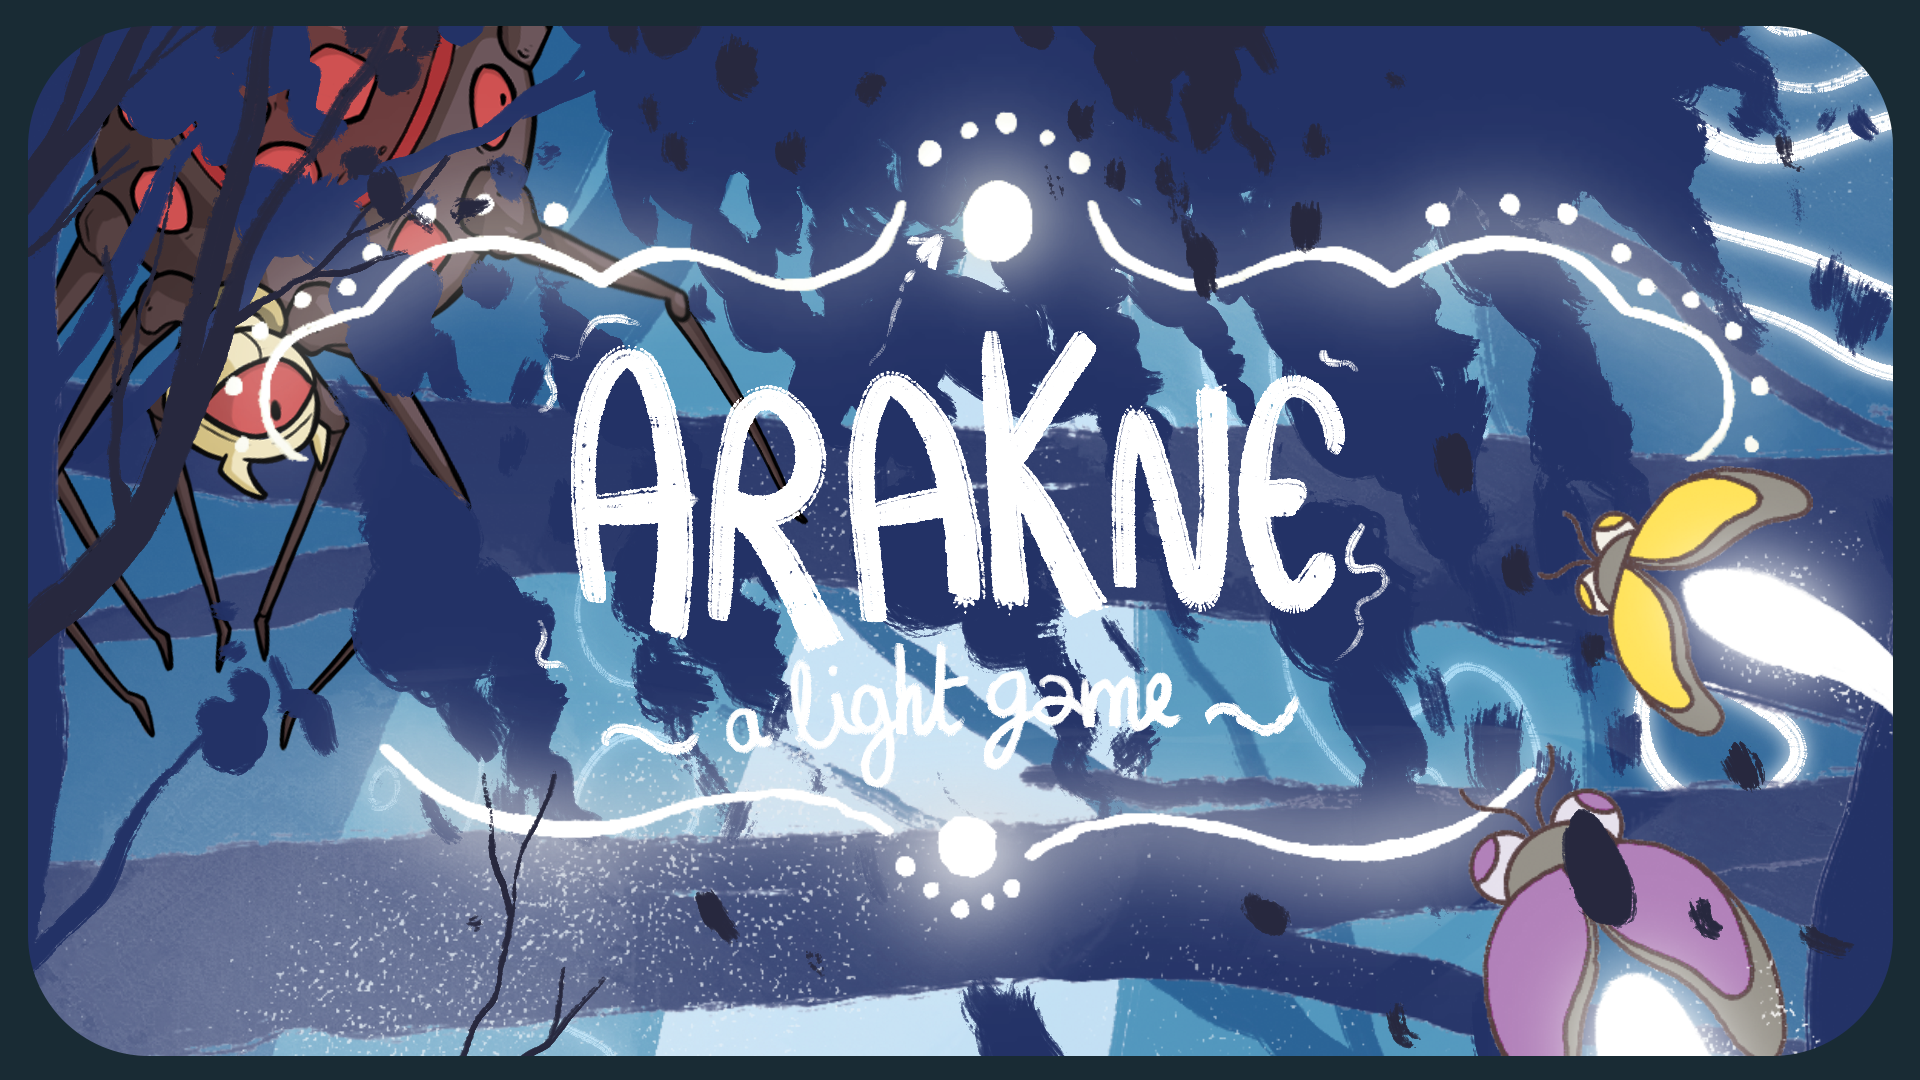 Arakne : a light game